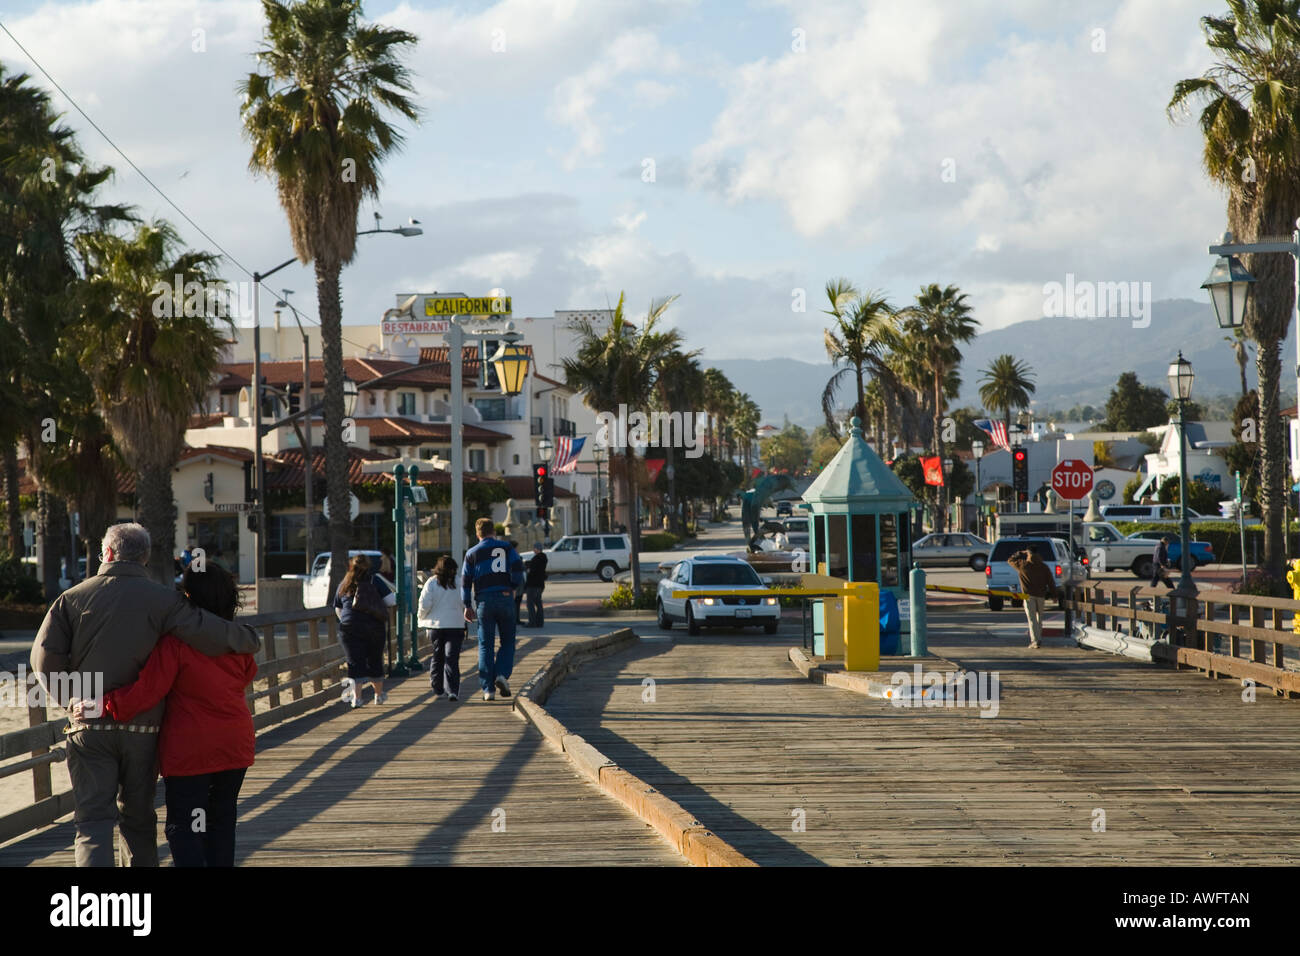 CALIFORNIA Santa Barbara portes de parking sur Stearns Wharf pier les piétons et les voitures sur la jetée en bois Banque D'Images